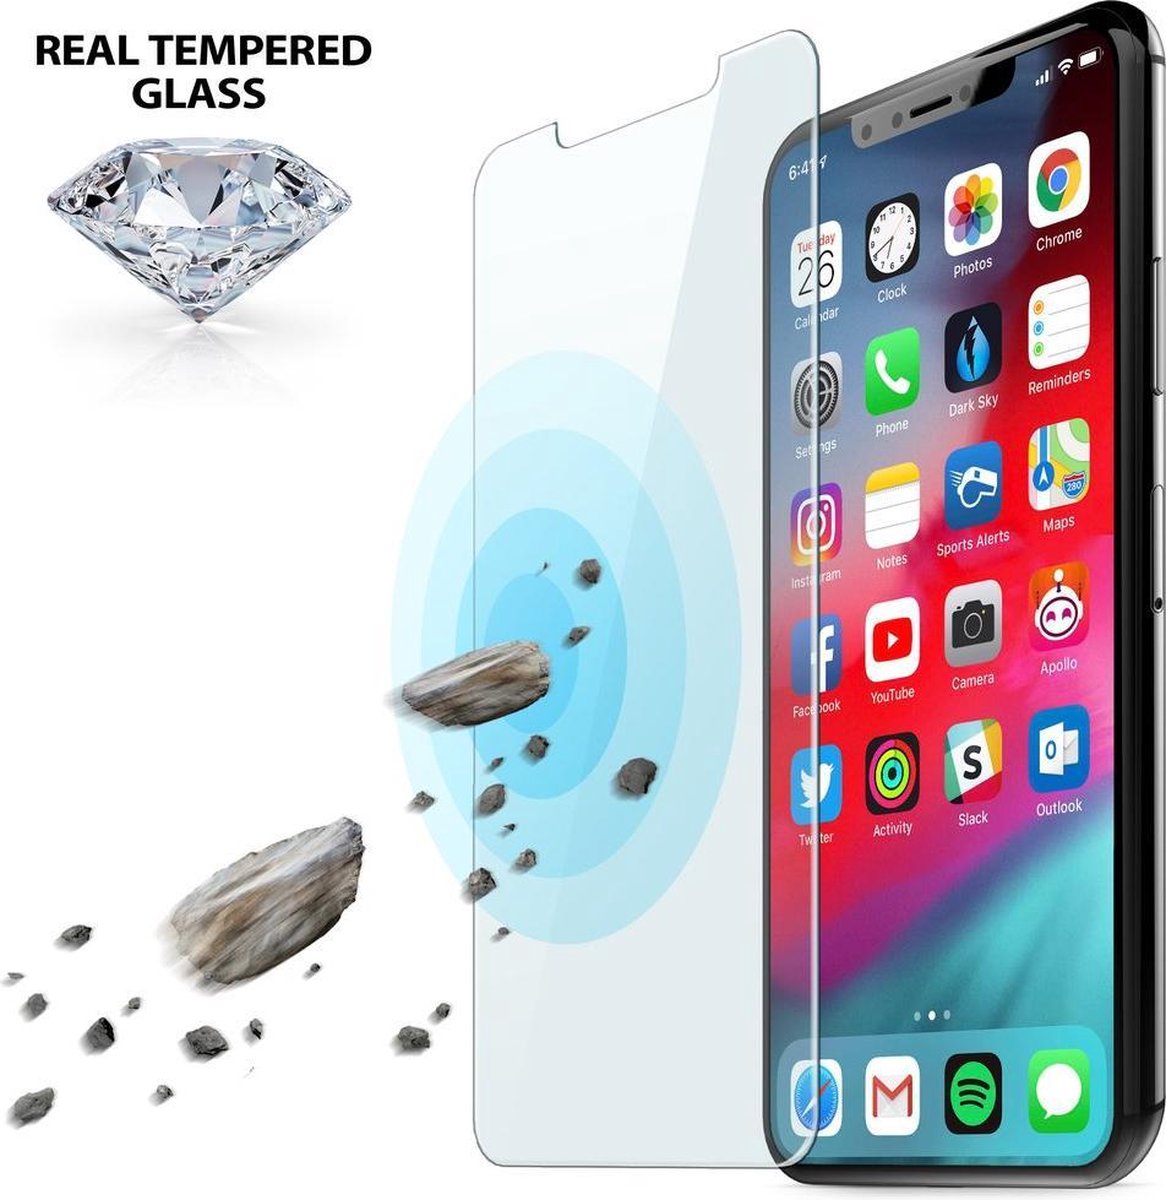 ✅ NIEUW 1 STUKS Apple iPhone 7/ 8 Screenprotector Glas Tempered Glass Screen Protector. Apple iPhone 7G 8G Check goed welke smartphone jij hebt! PROLEDPARTNERS®